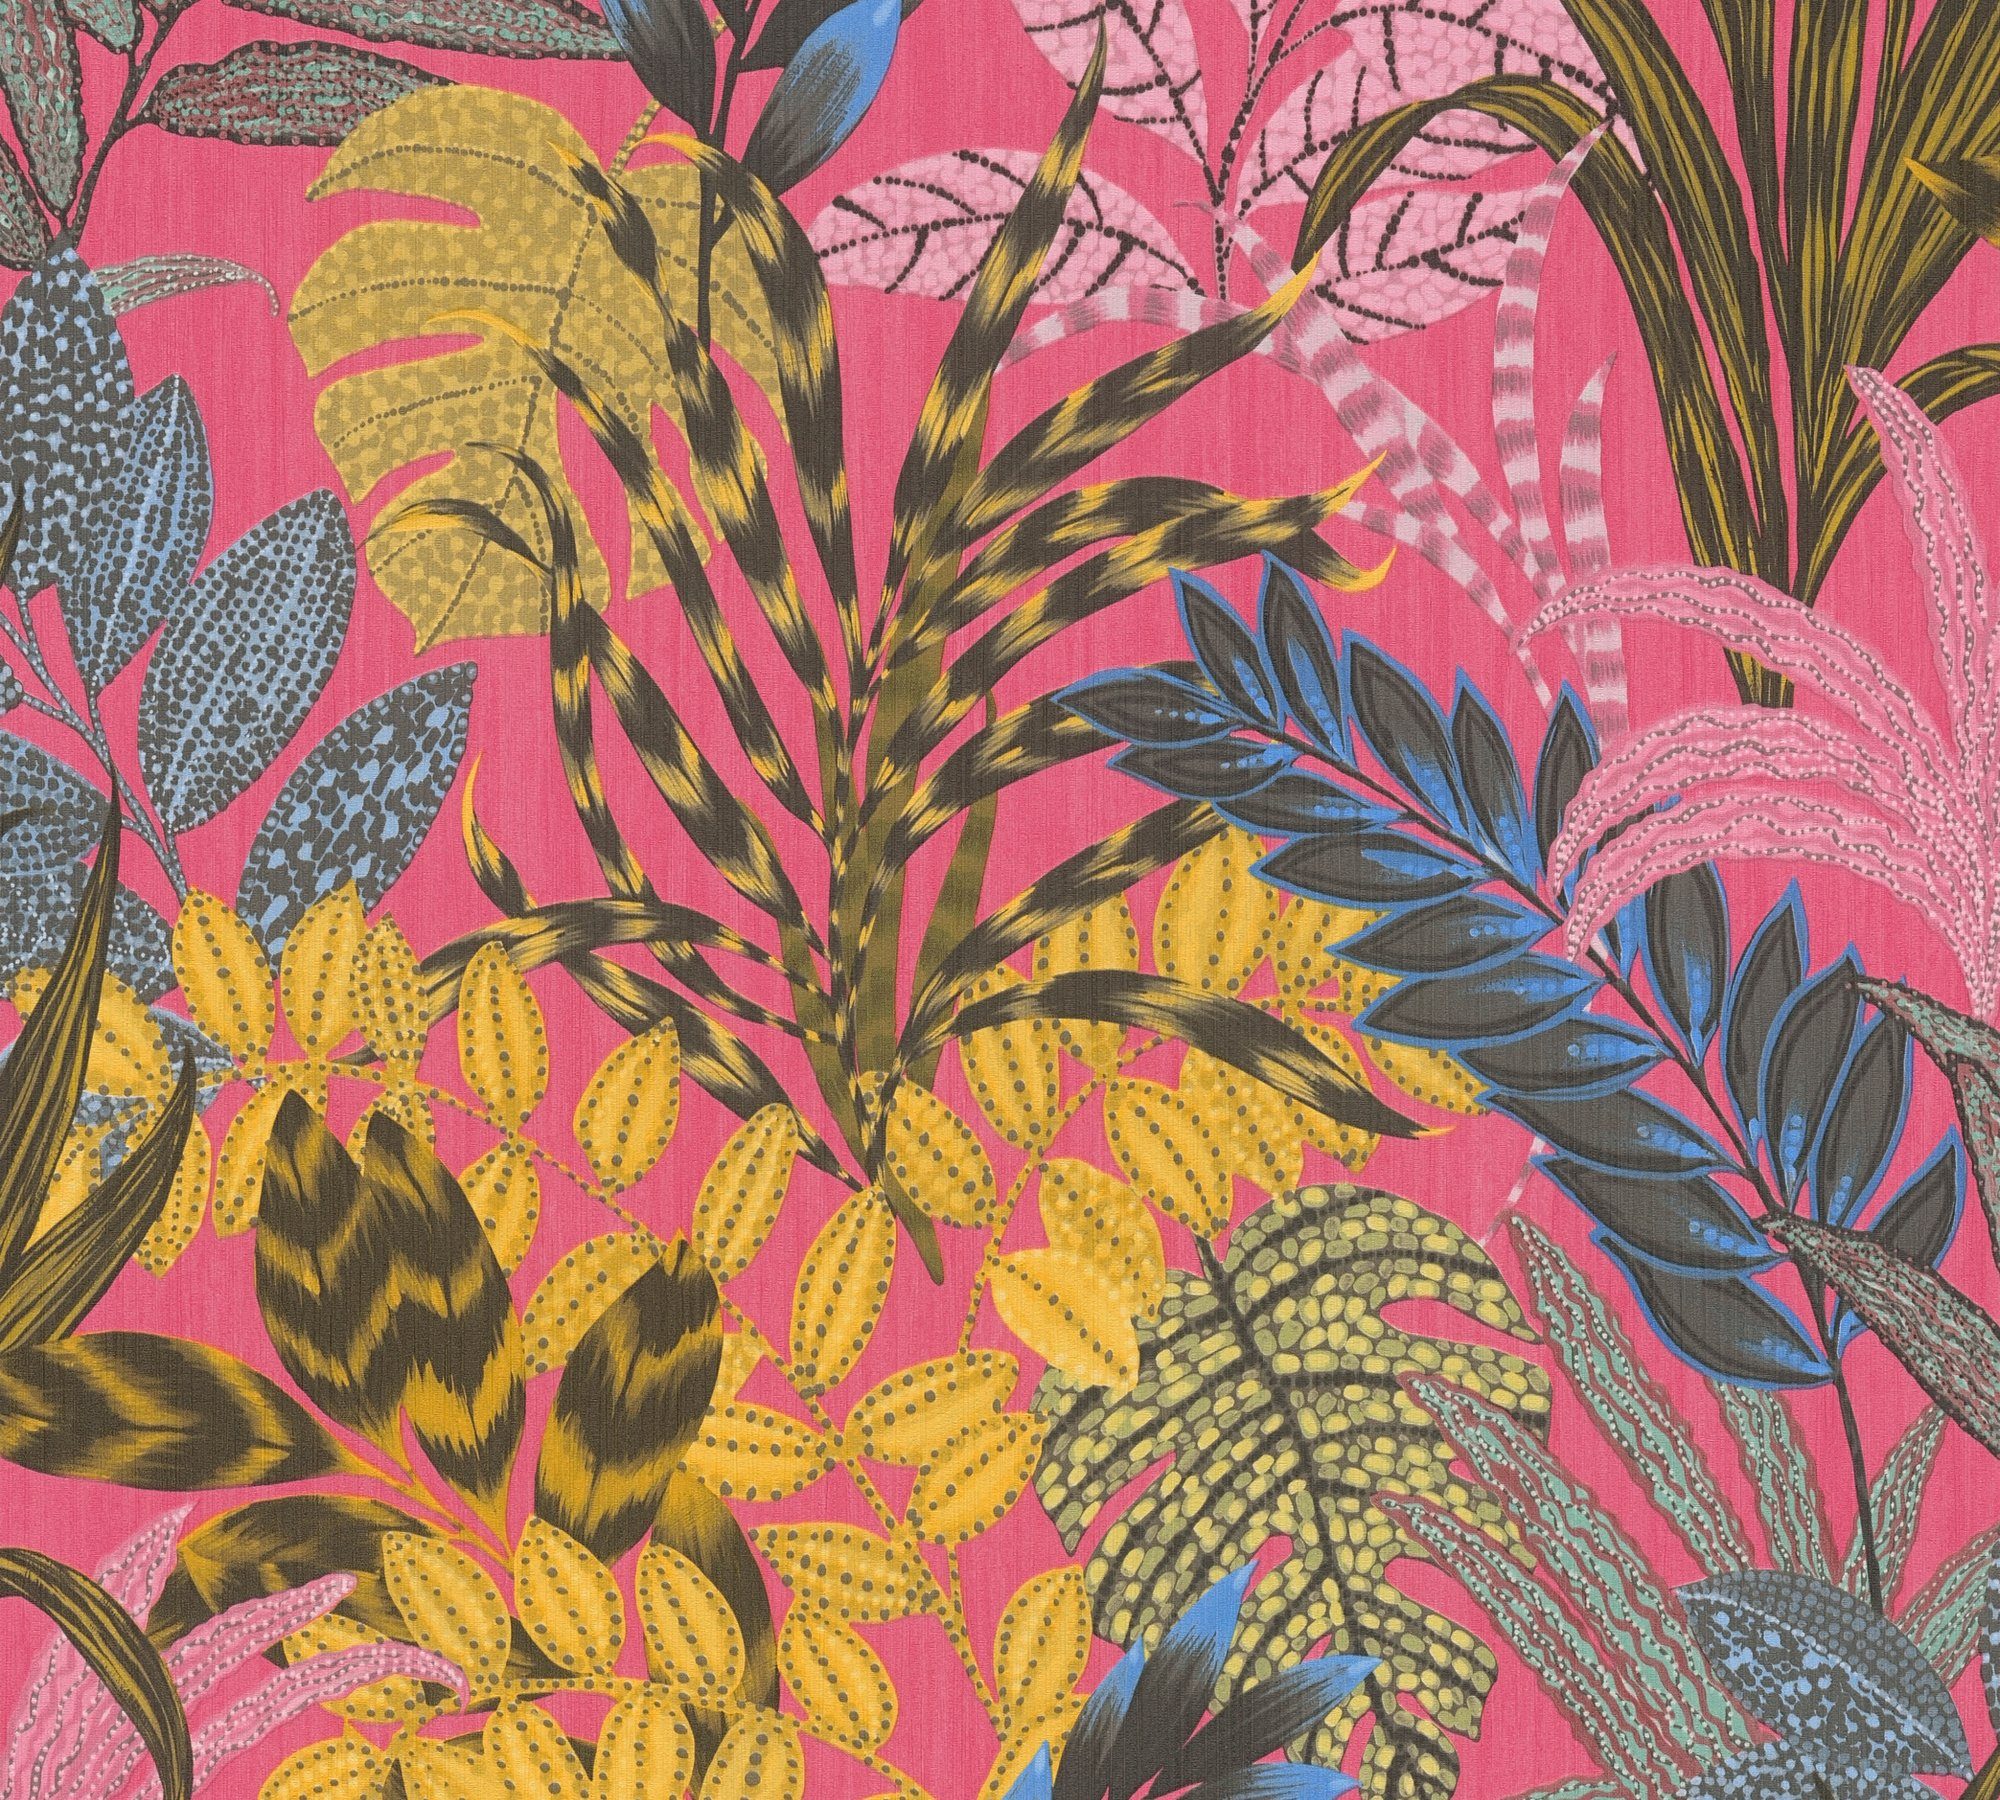 Blumen Vliestapete Town, Cape Tapete Nala rosa/pink/gelb Création Stories, living Metropolitan tropisch, botanisch, A.S. Dschungeltapete walls floral,